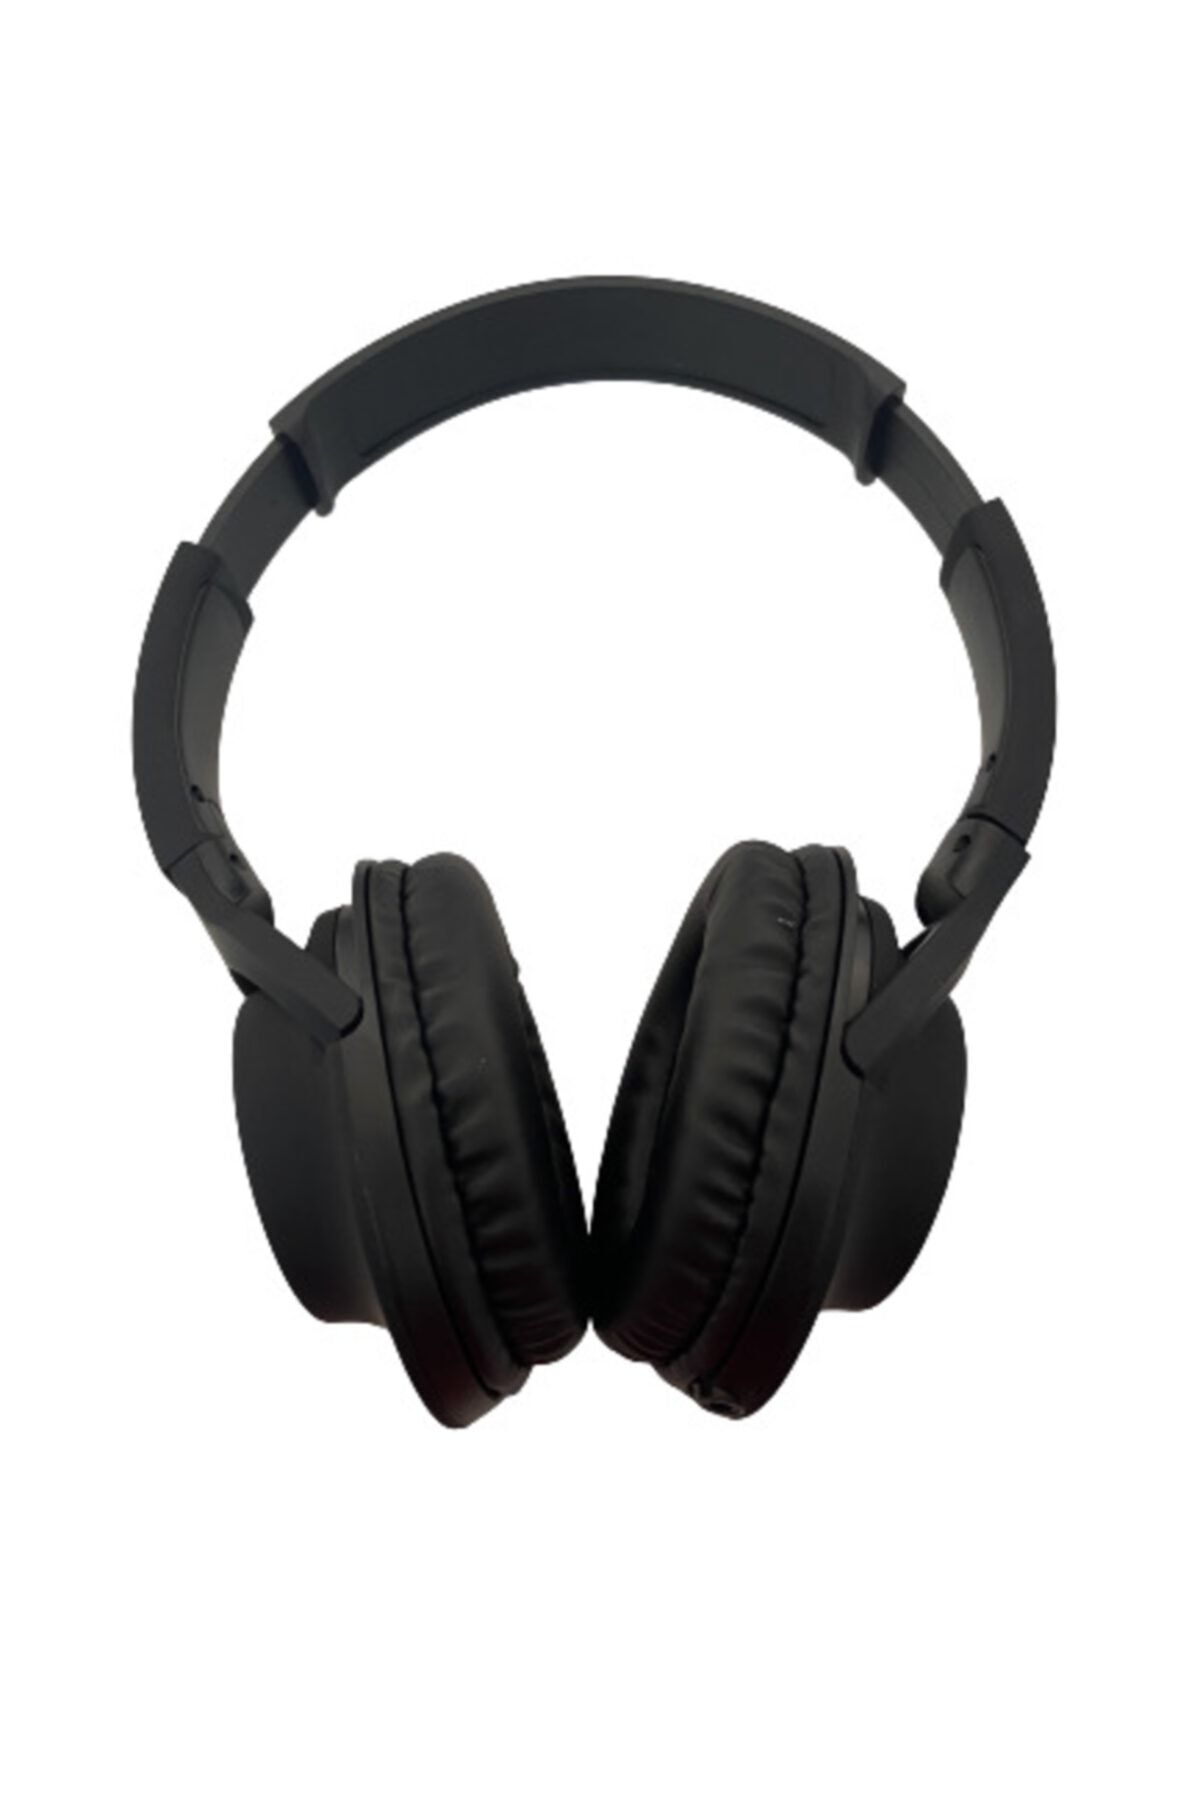 Teknoloji Gelsin Kulak Üstü Extra Bass Mikrofonlu Uzaktan Eğitime Uygun Kablolu Kulaklık